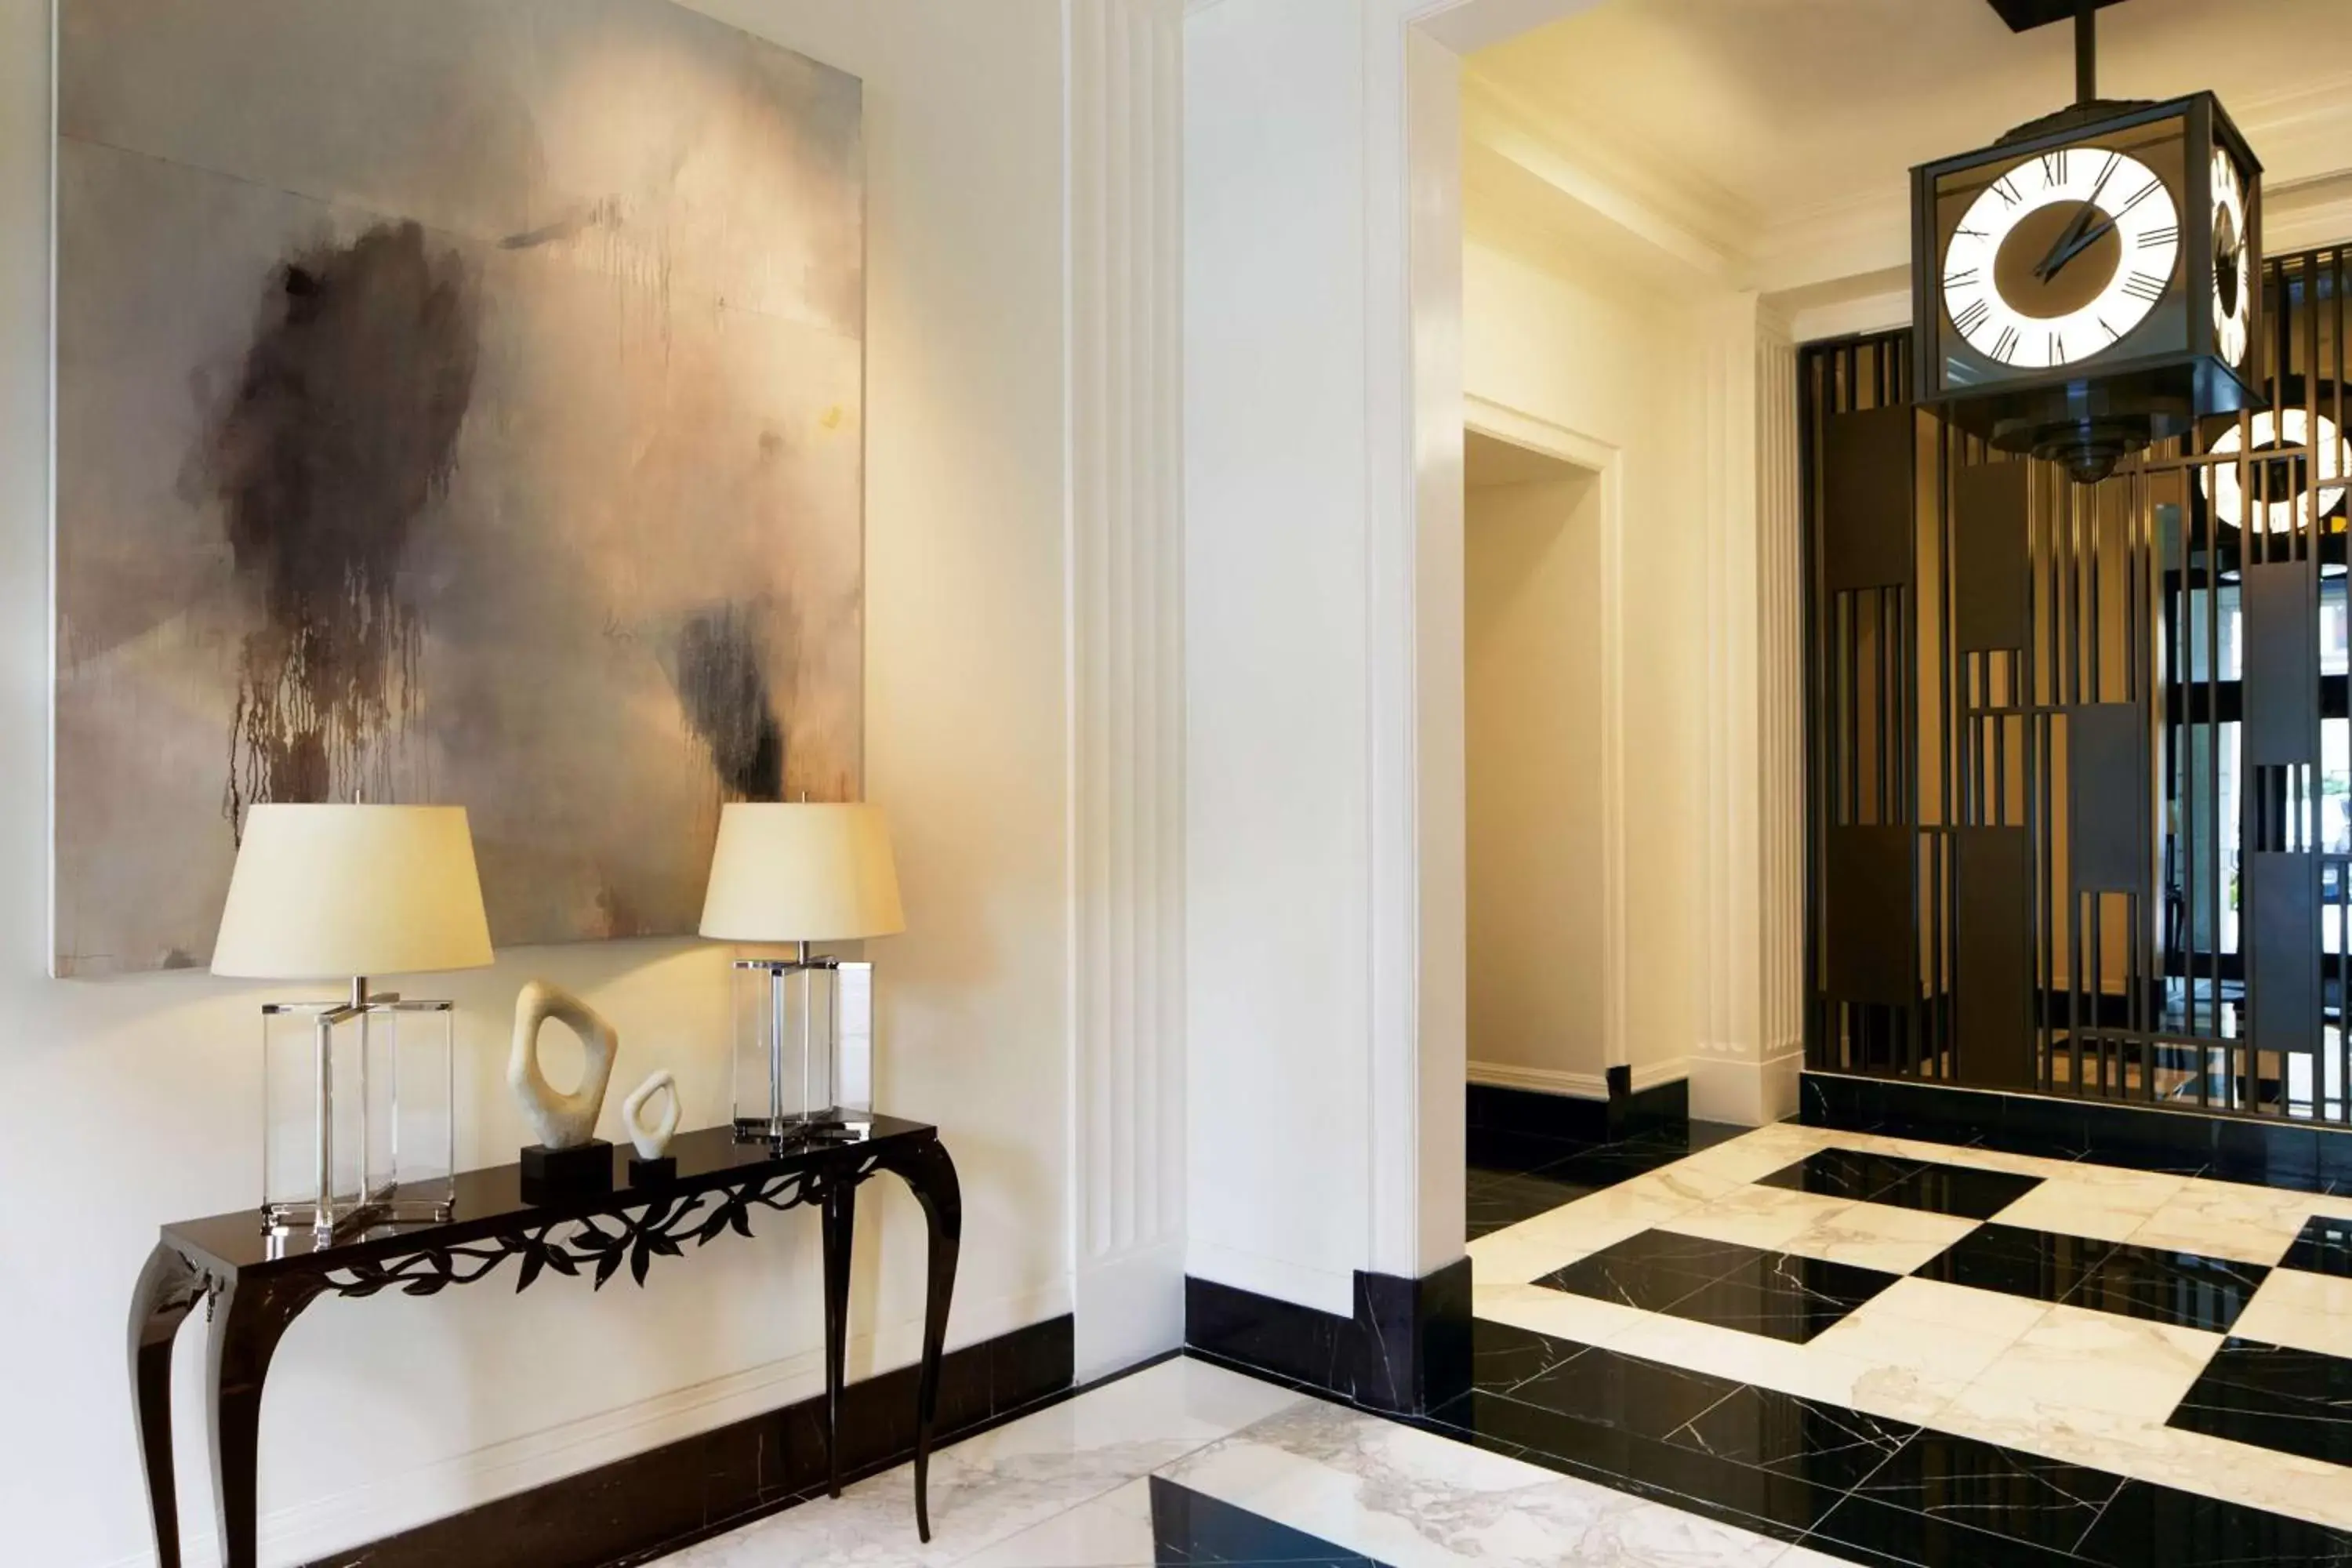 Lobby or reception in Waldorf Astoria Atlanta Buckhead